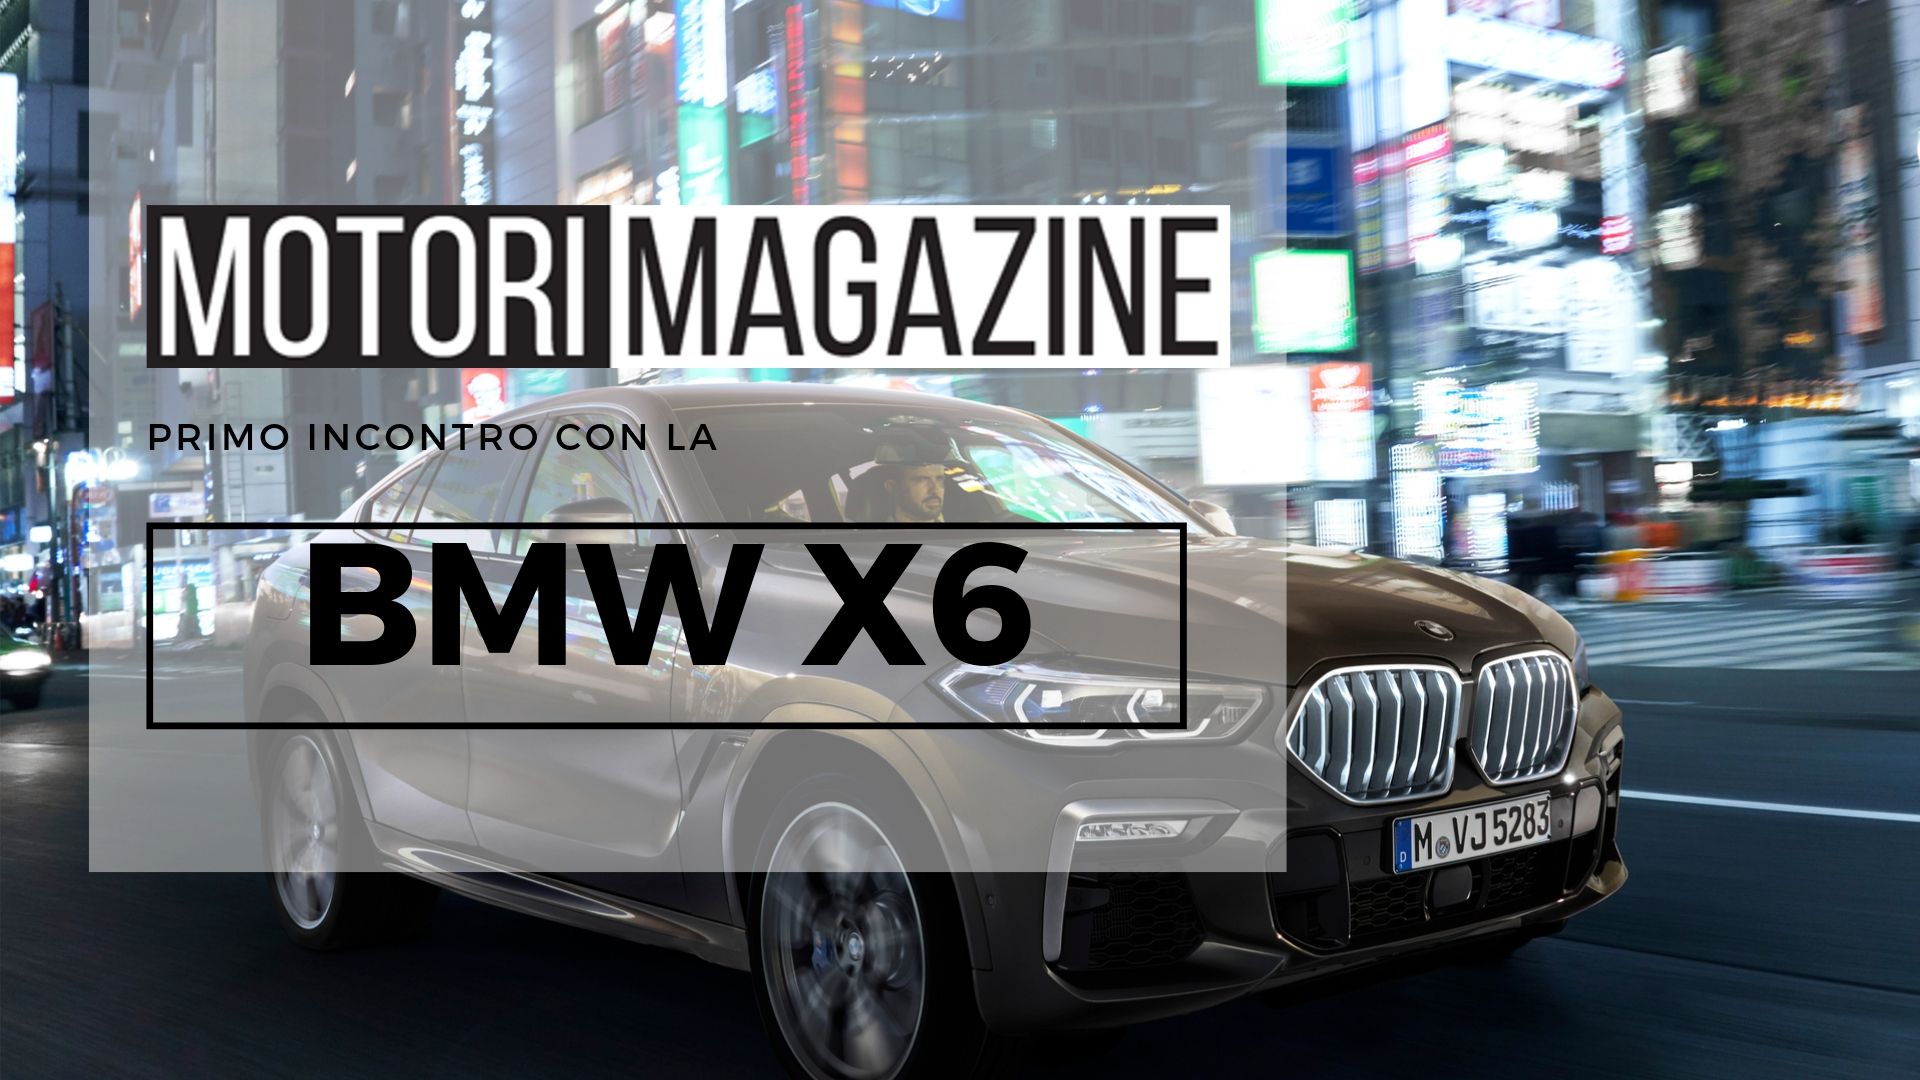 Bmw X6 2020 Arriva La Terza Generazione Motori Magazine